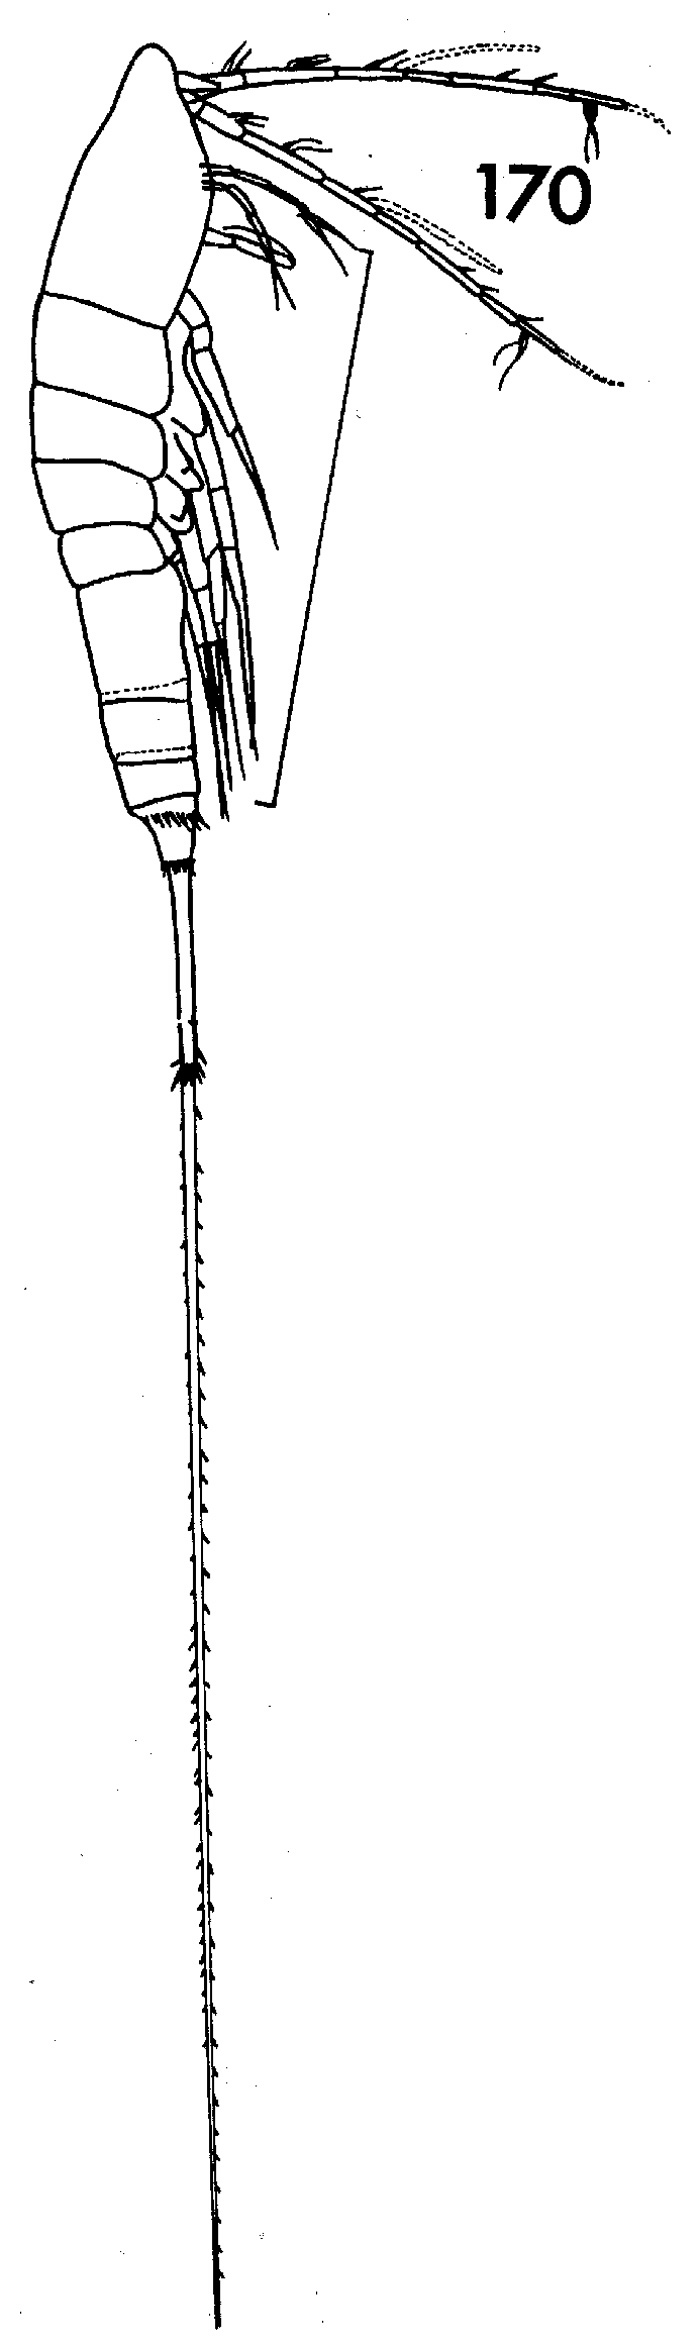 Espèce Macrosetella gracilis - Planche 1 de figures morphologiques